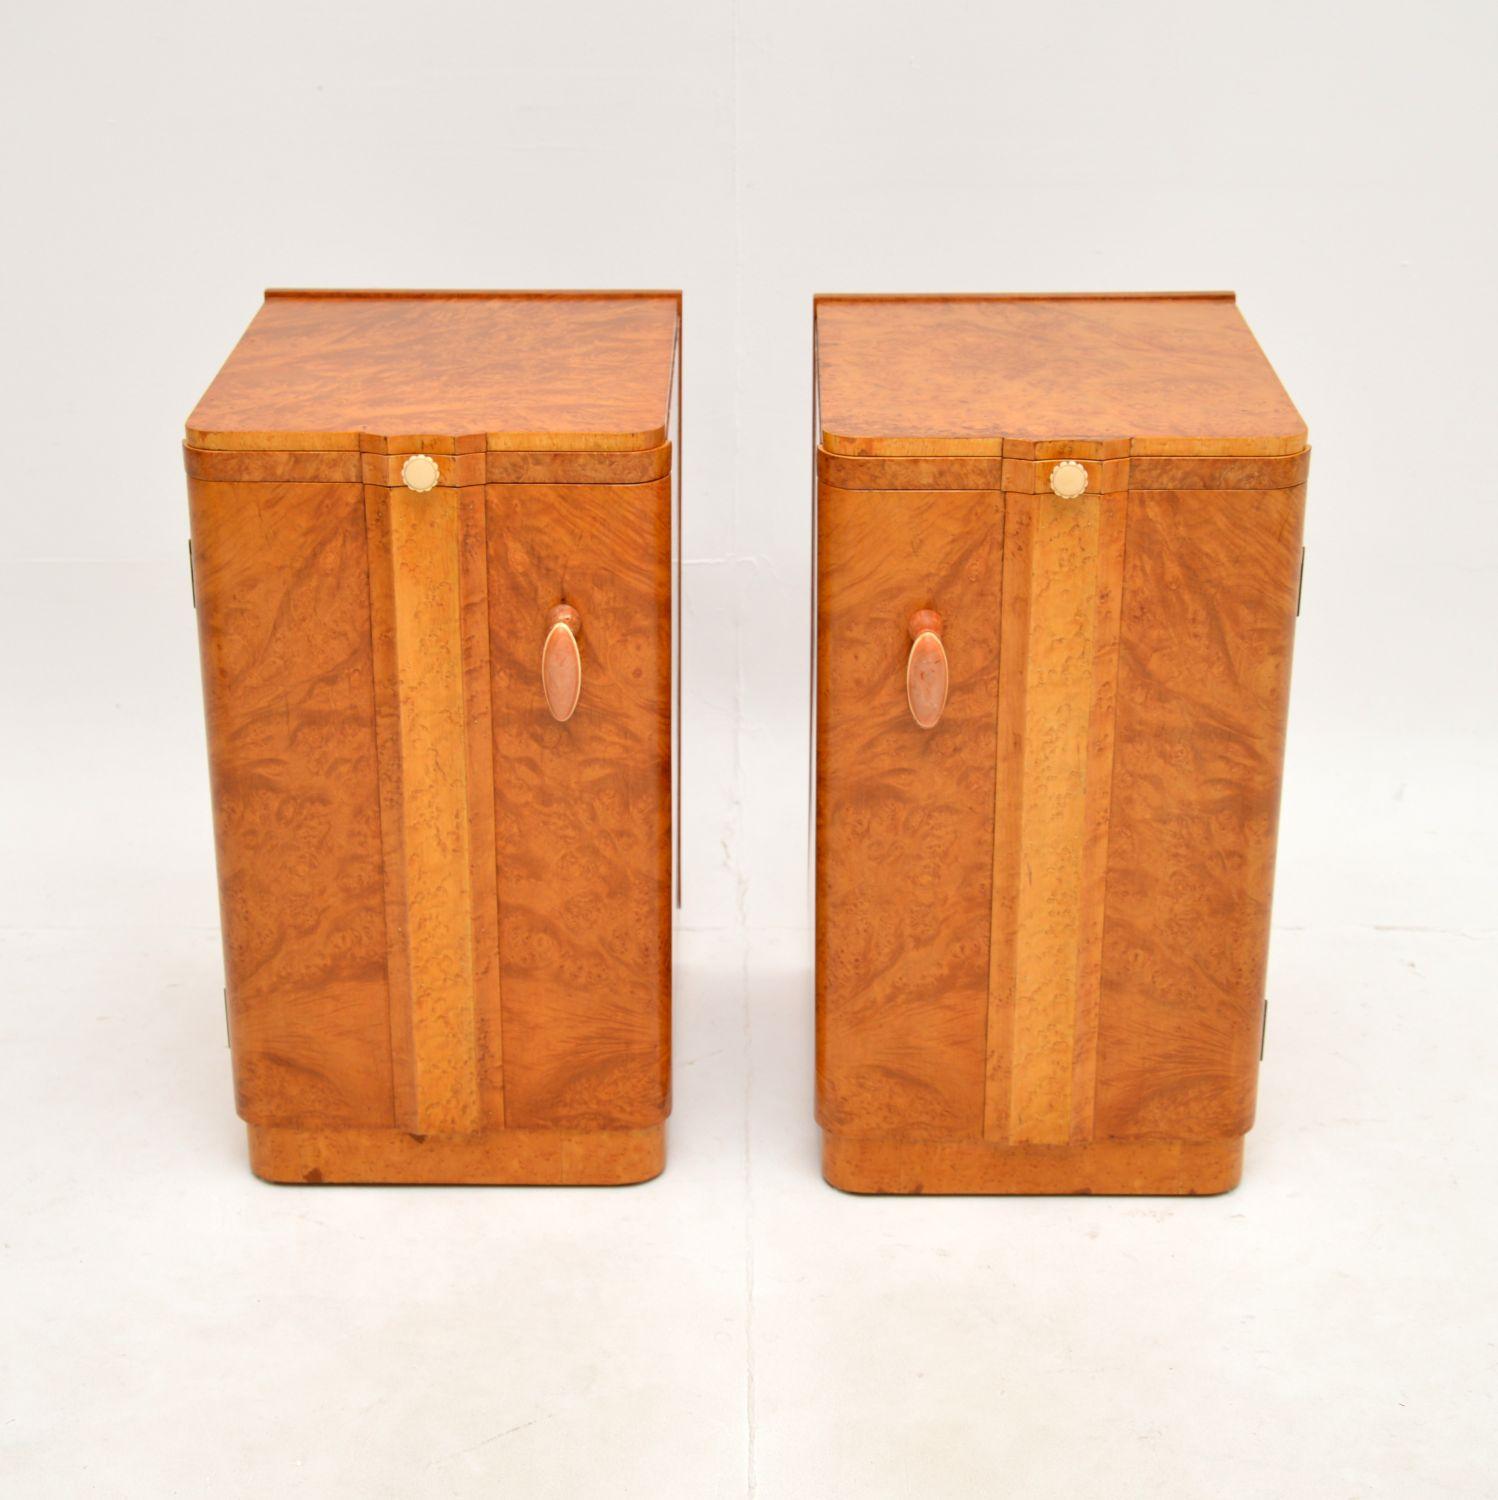 Une superbe paire de tables de chevet Art Déco en ronce de noyer. Elles datent des années 1920-30 et ont été fabriquées en Angleterre par Epstein.

La qualité est exceptionnelle, ils sont magnifiquement conçus avec de jolies poignées en bakélite